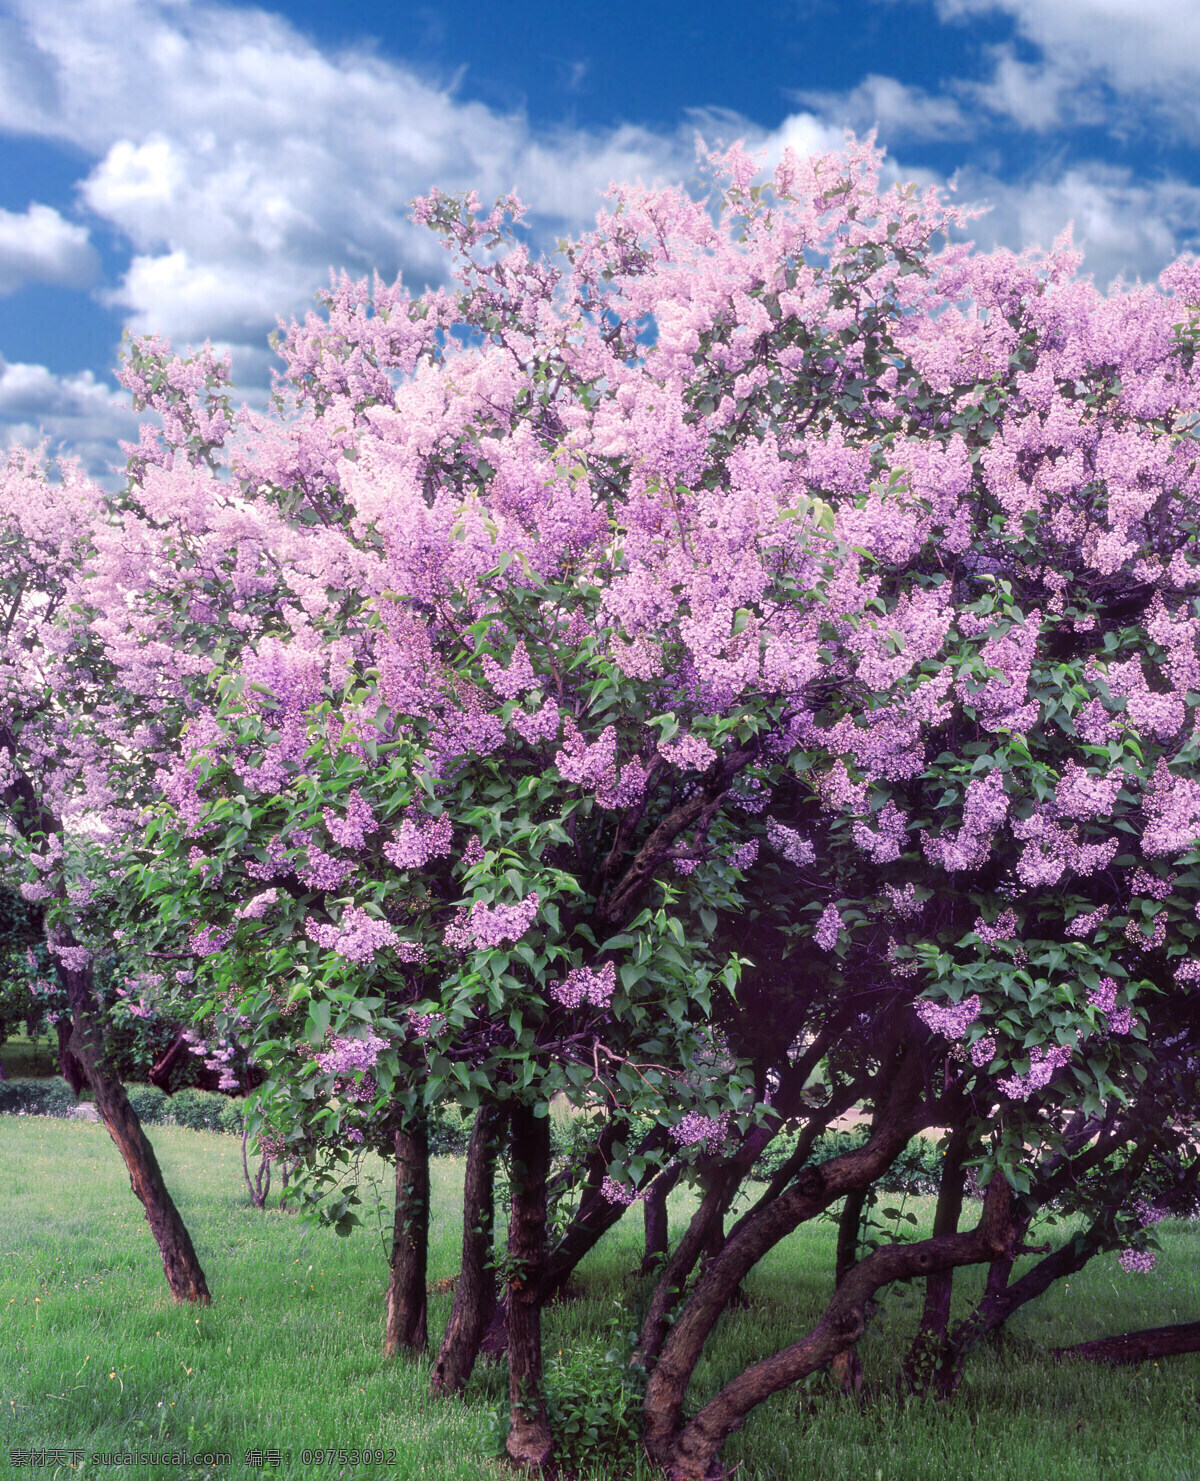 丁香花灌木 草地 蓝天 灌木丛 春花盛开 春天的天空 一束束紫丁香 自然保护区 山水风景 摄影图库 自然景观